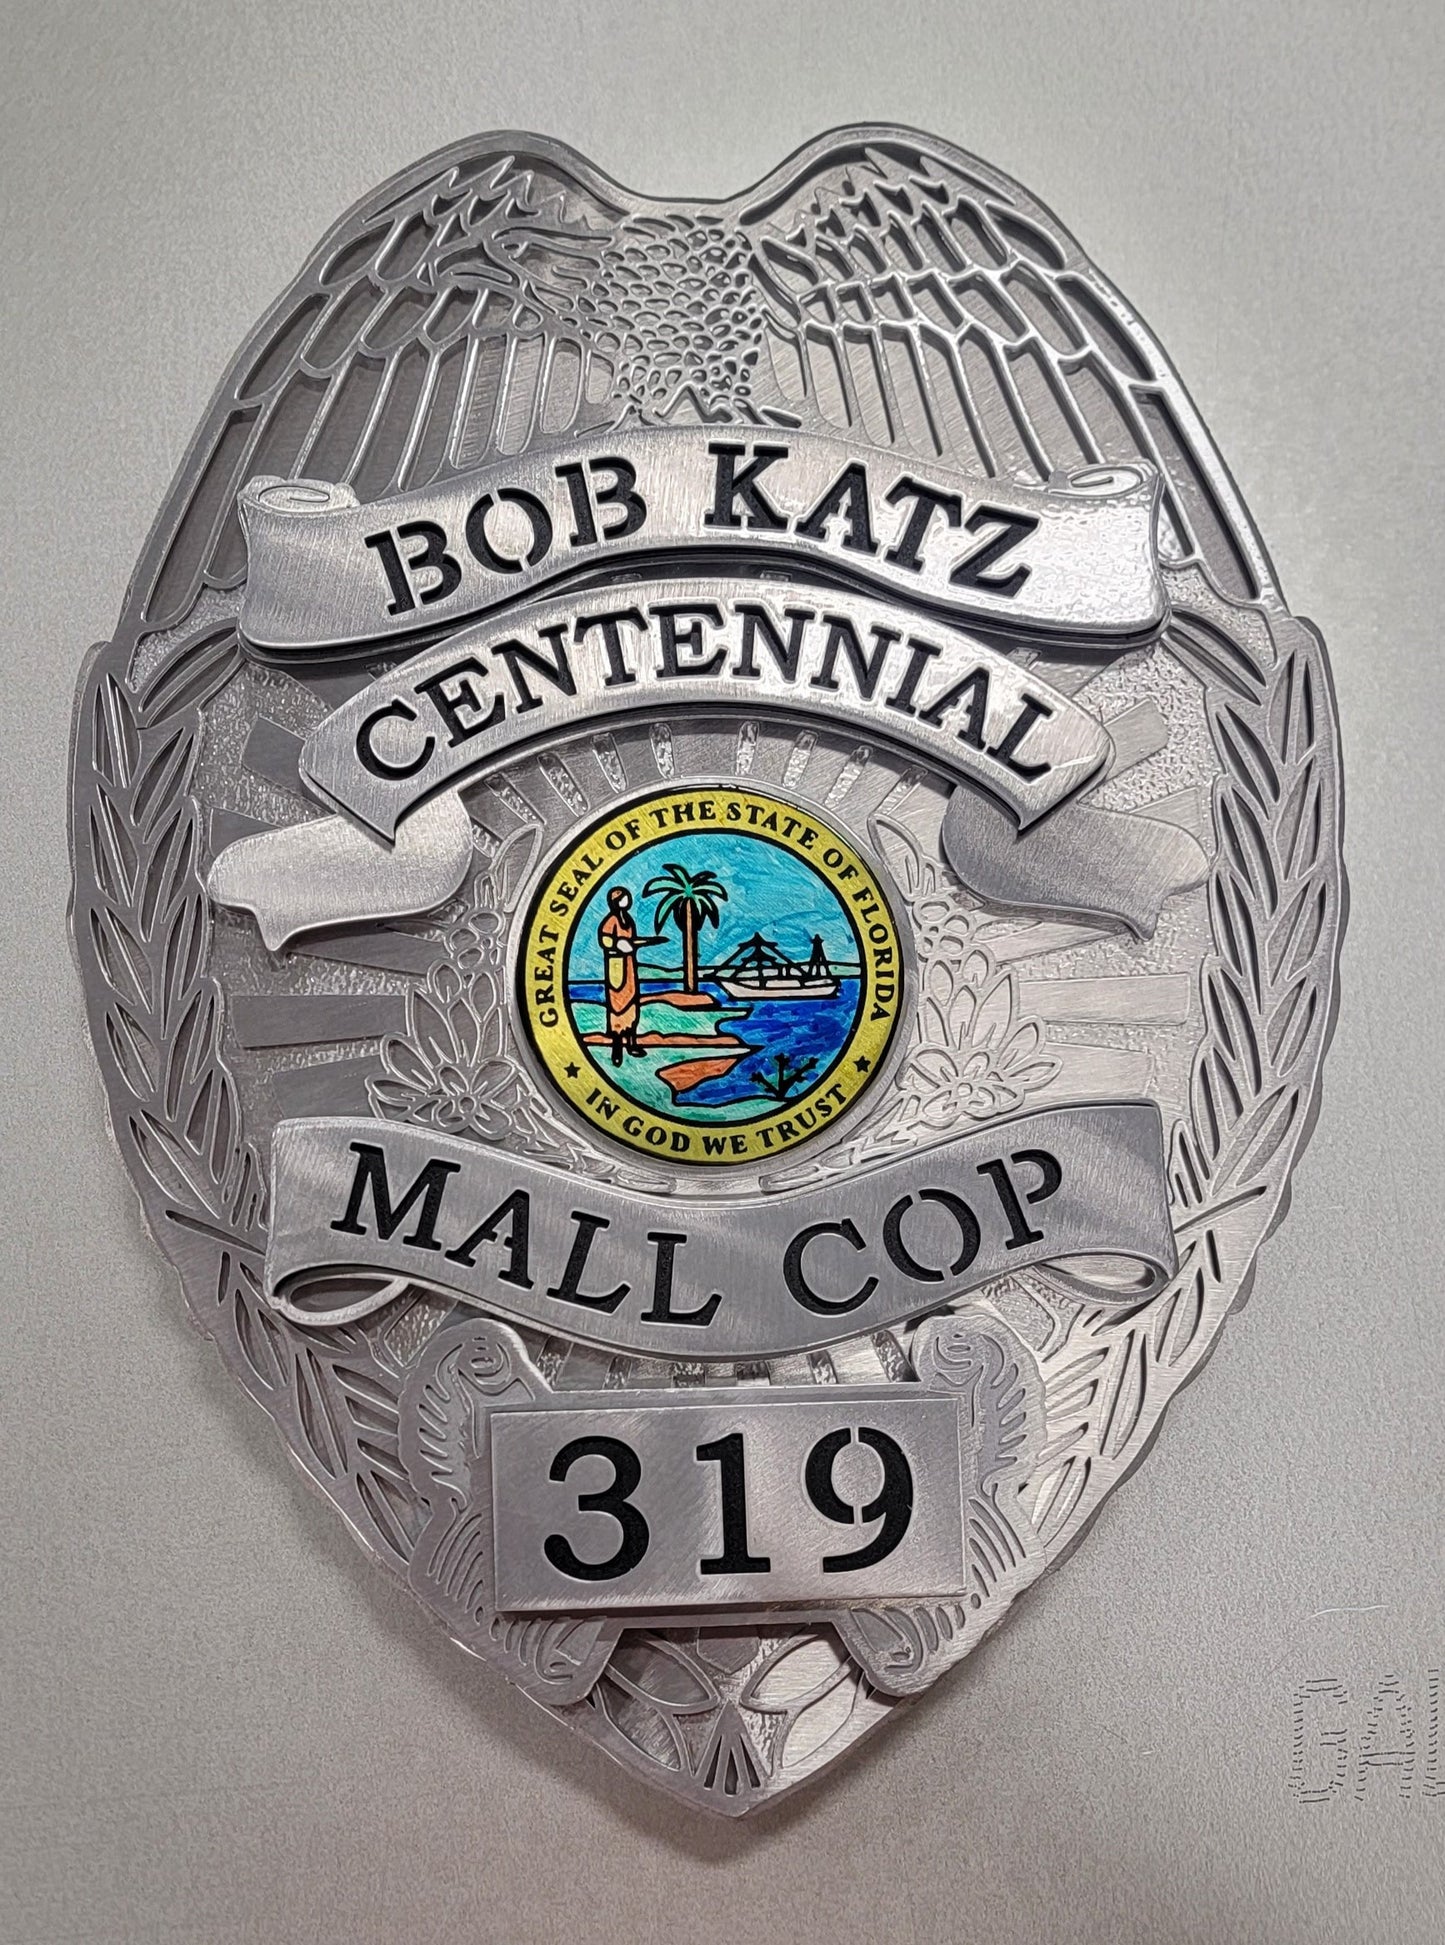 Centennial Mall Cop Badge